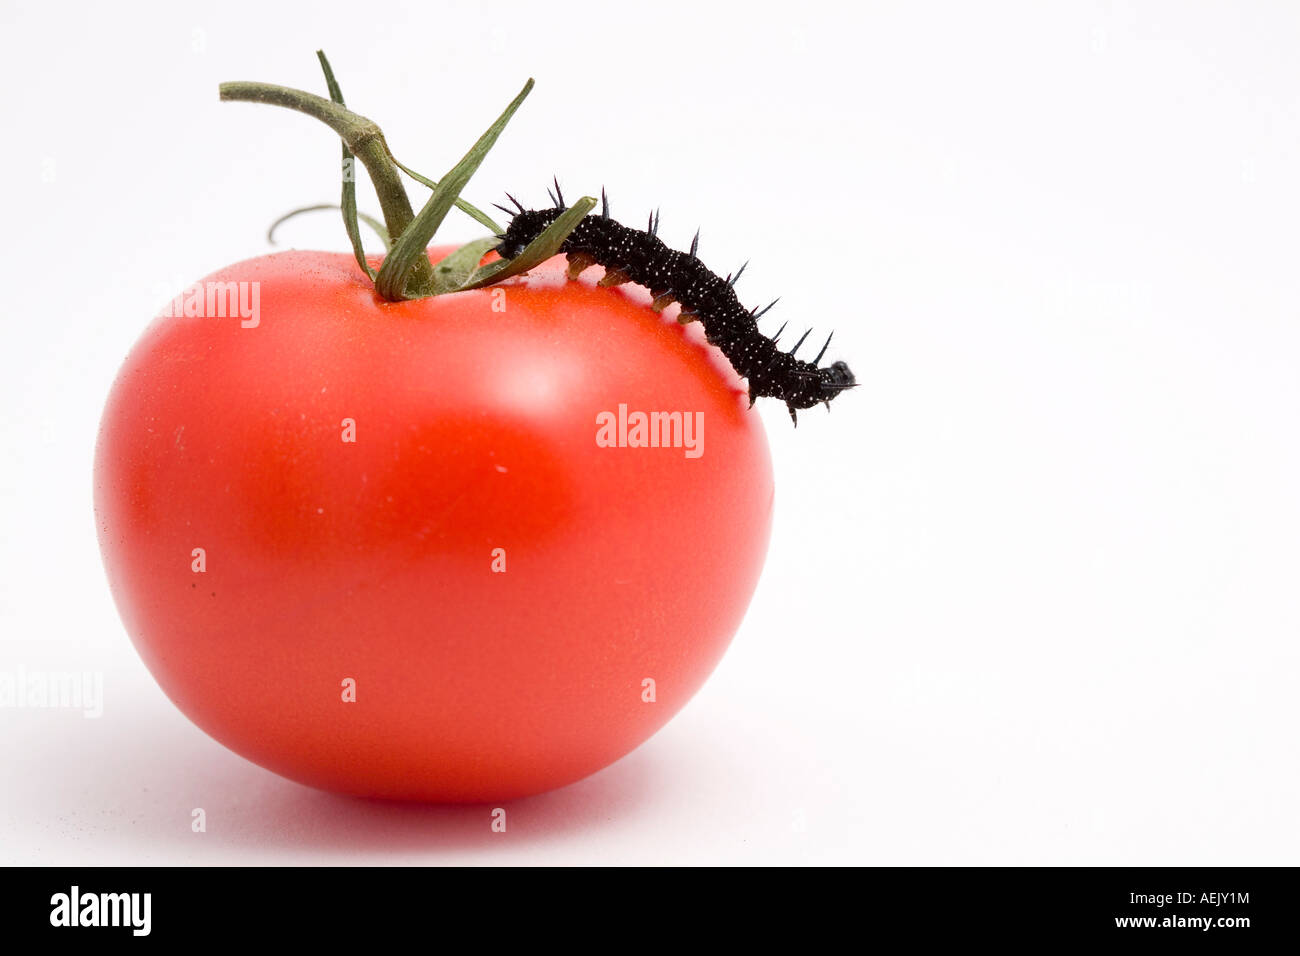 Caterpillar (Inachis io) and tomato (Solanum lycopersicum) Stock Photo